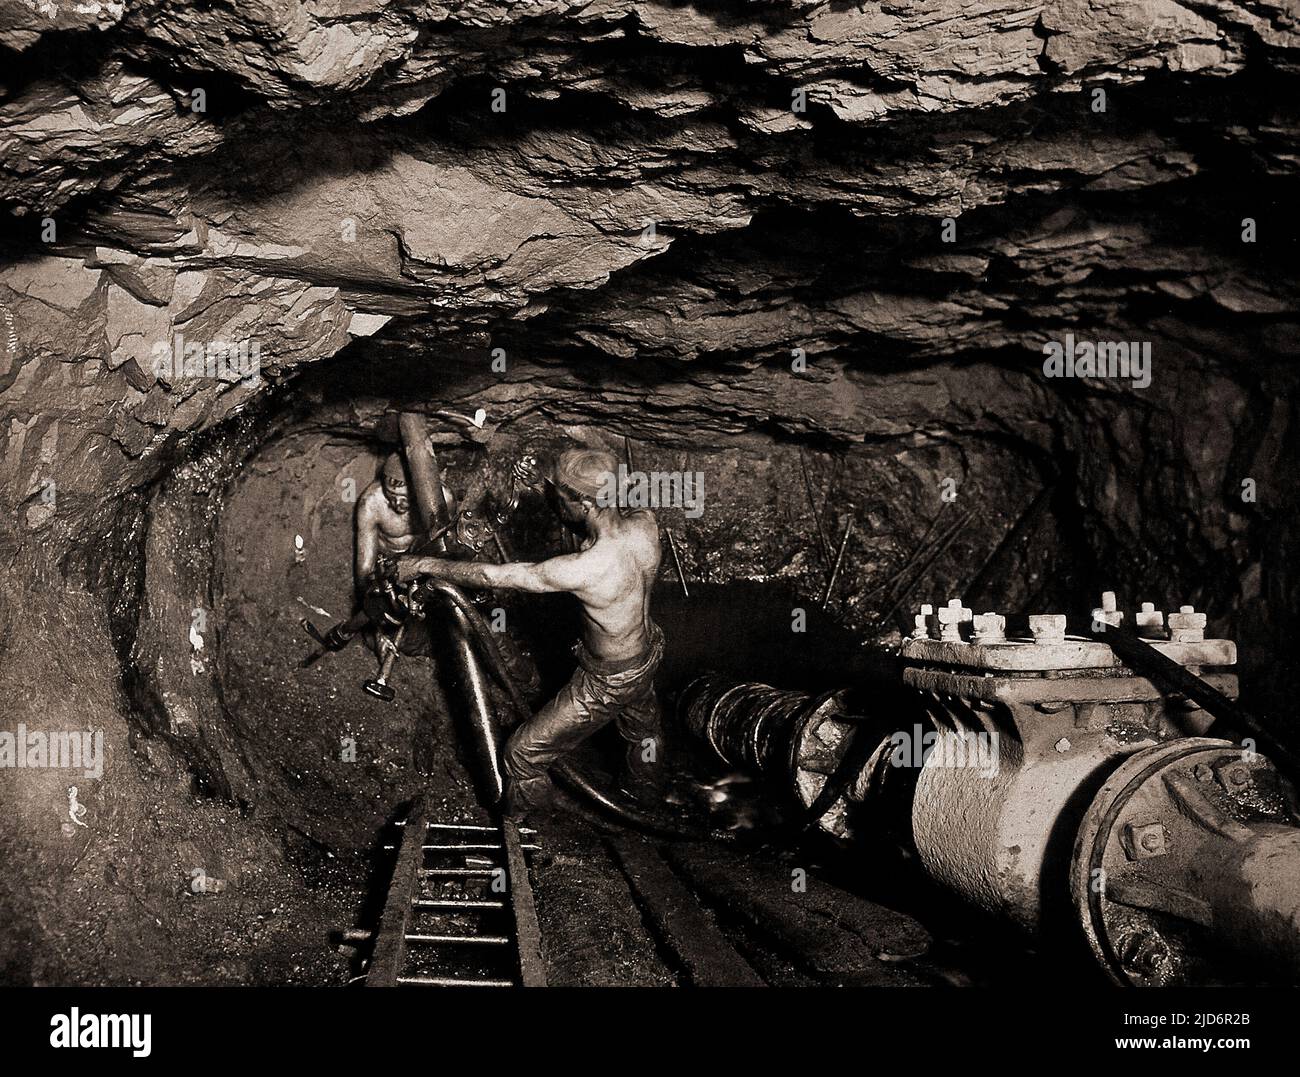 Exploitation de l'étain dans la mine de Tincroft, Carn Brea, une mine de Cornouailles vers 1910, photo de J.C. Vous remarquerez que les bougies sont collées au mur pour l'éclairage Banque D'Images